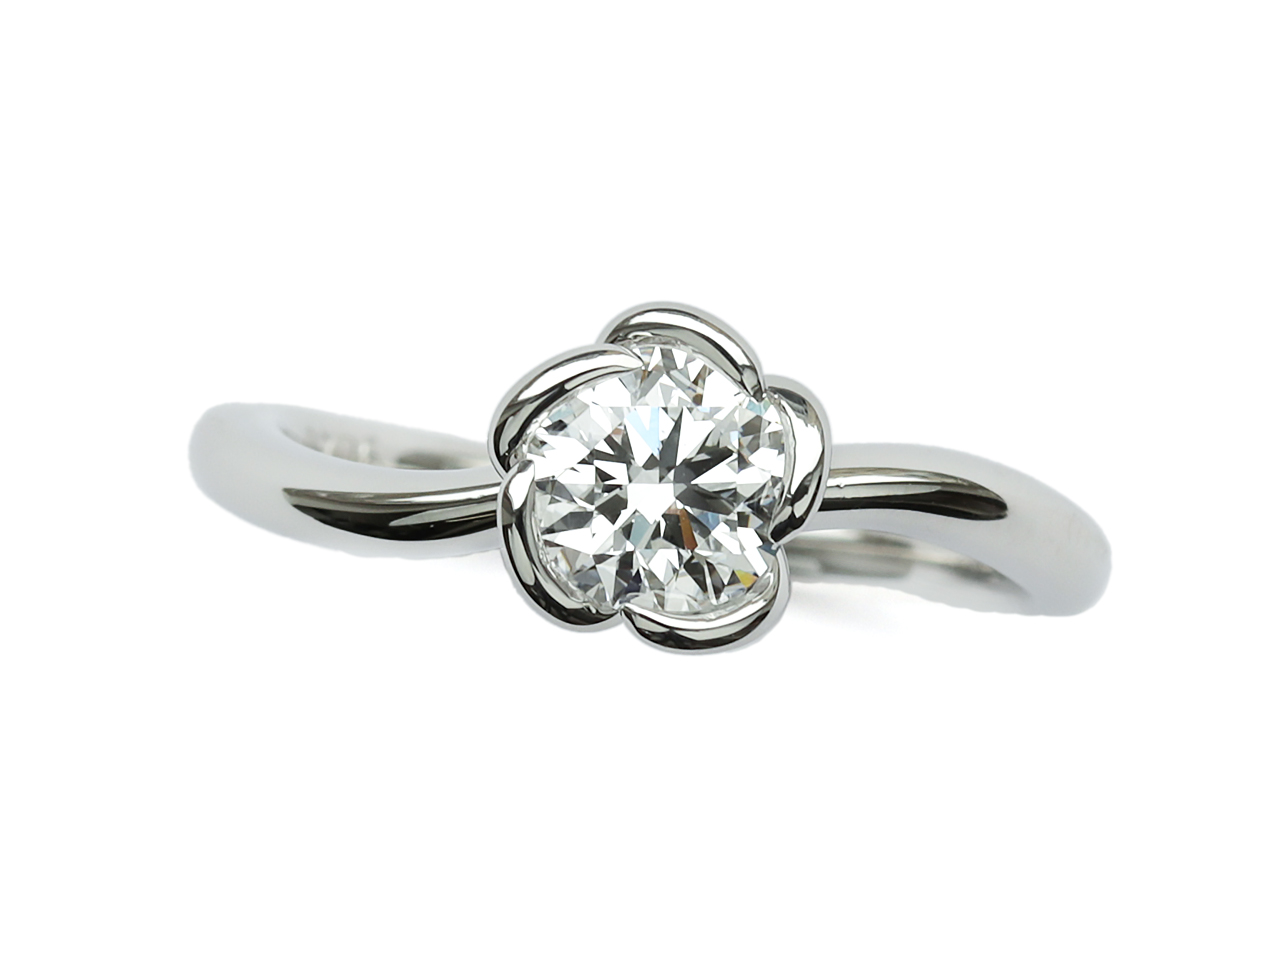 彼女が好きなデザイン、彼が渡したい良質なダイヤで婚約指輪を